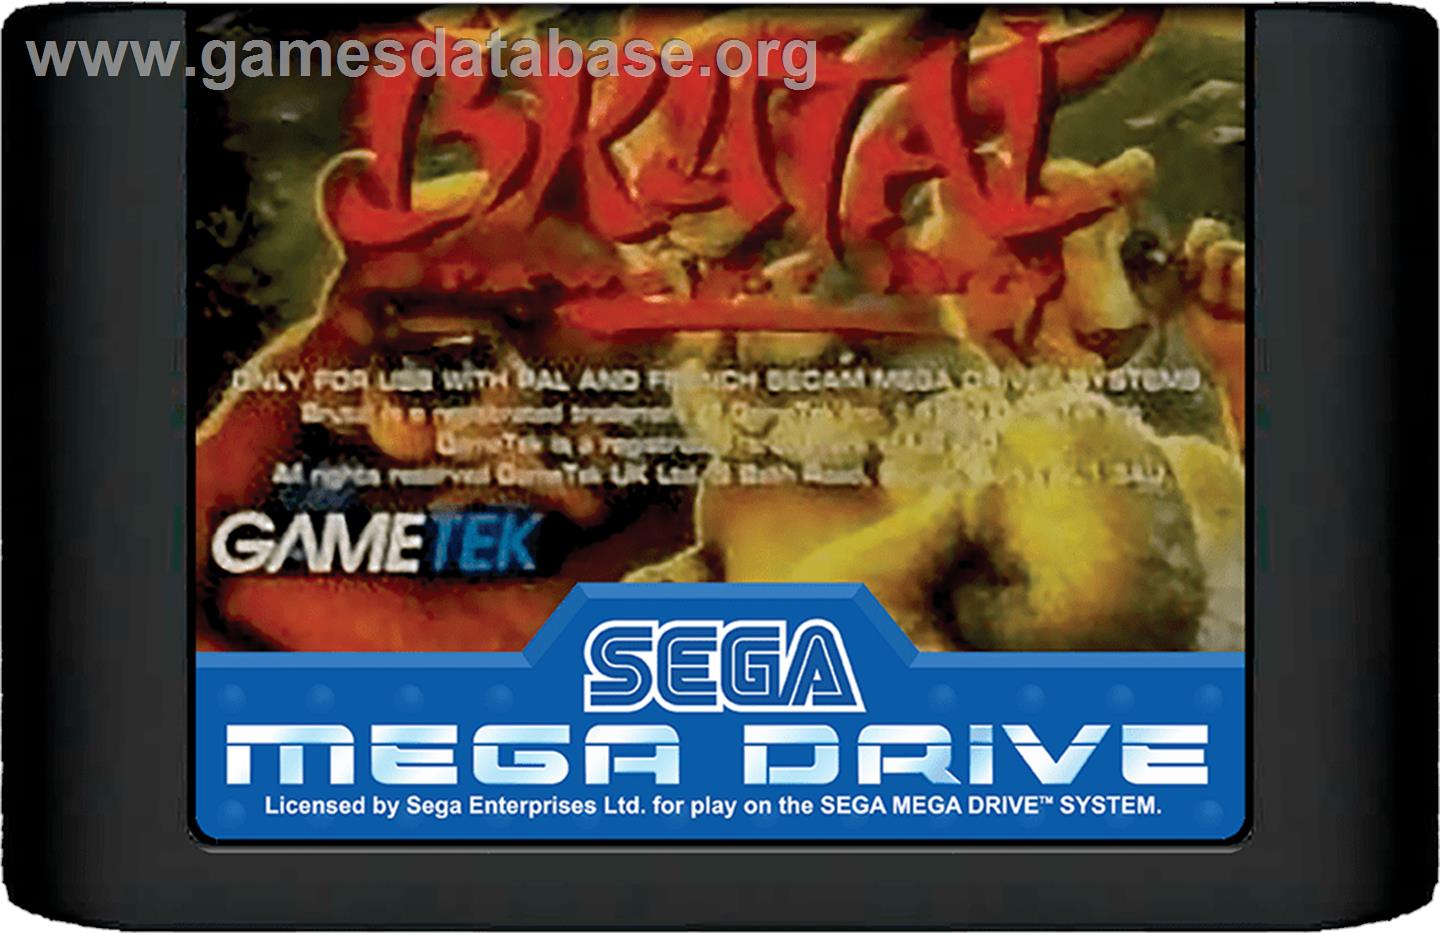 Brutal: Paws of Fury - Sega Genesis - Artwork - Cartridge